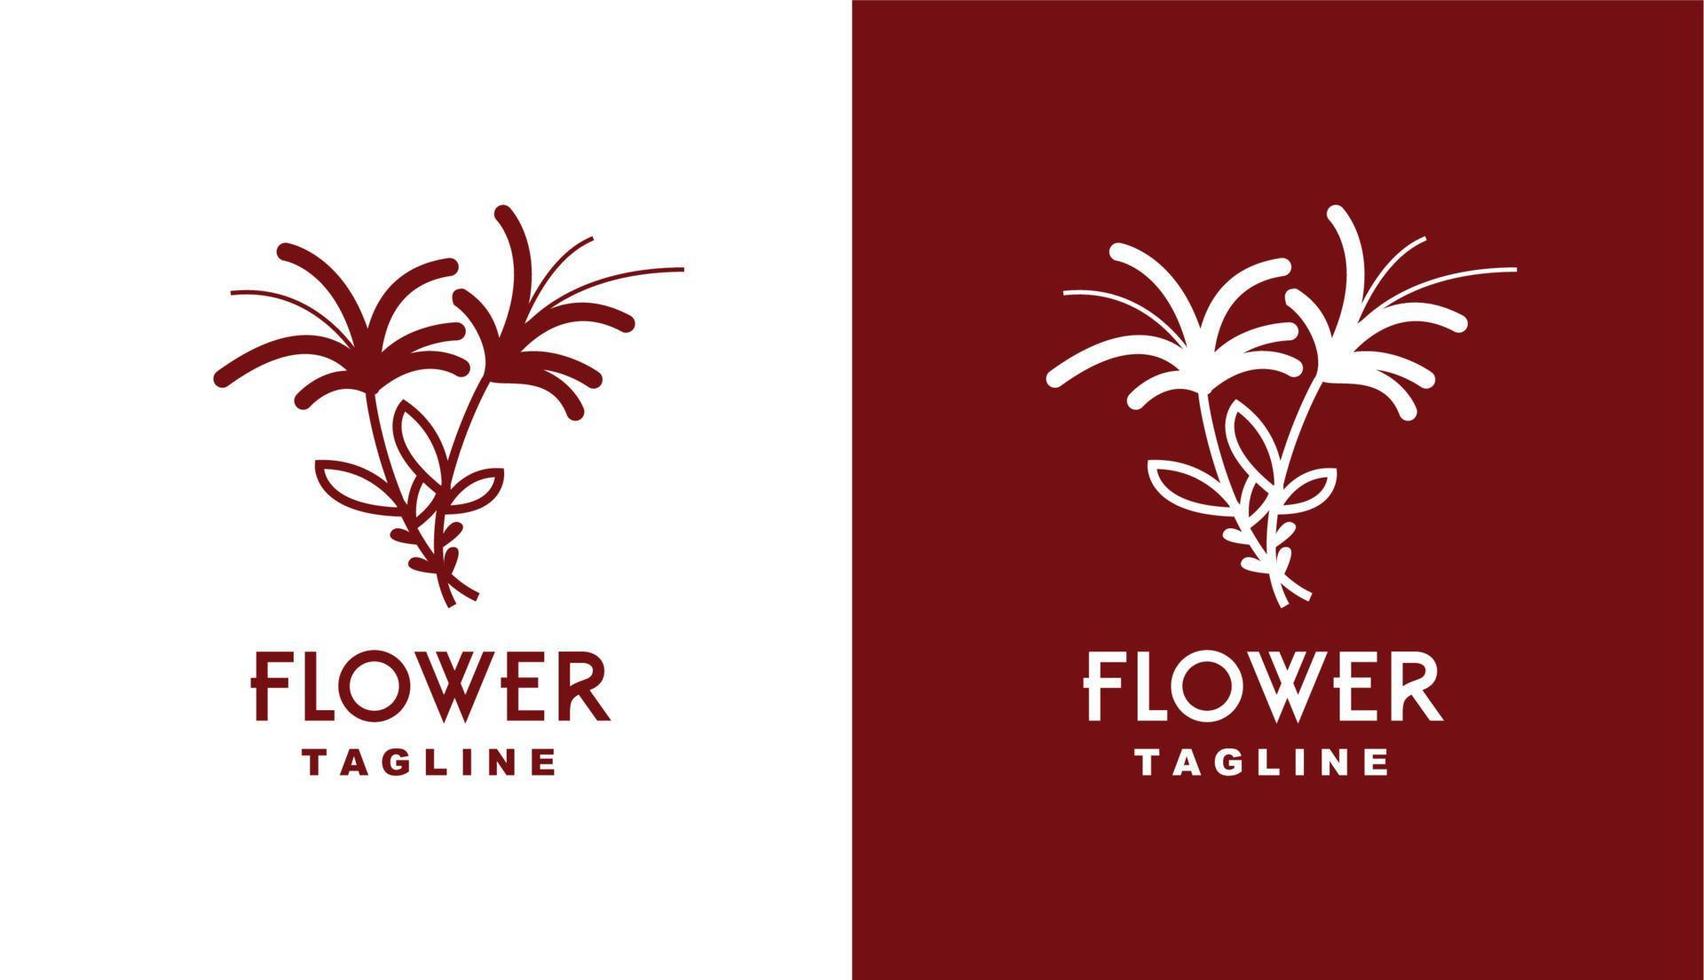 Zwillingslilienblumen-Logo-Design-Inspiration für Boutiquen und andere Marken vektor